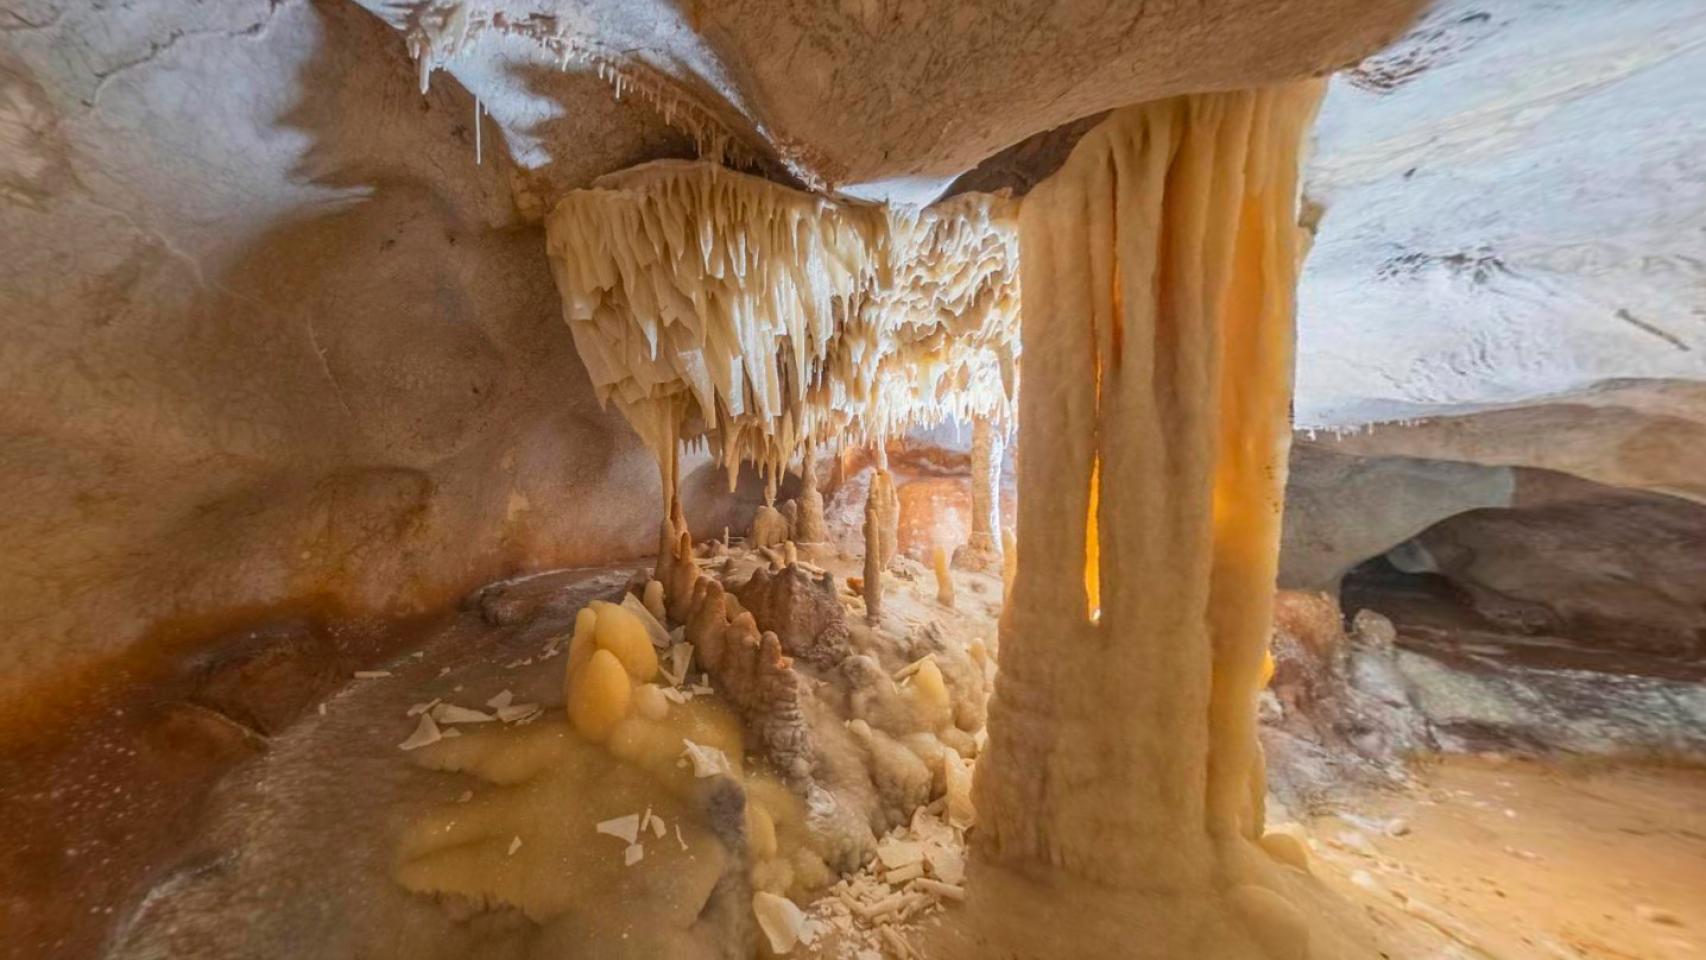 Otra imagen del interior de la cueva.